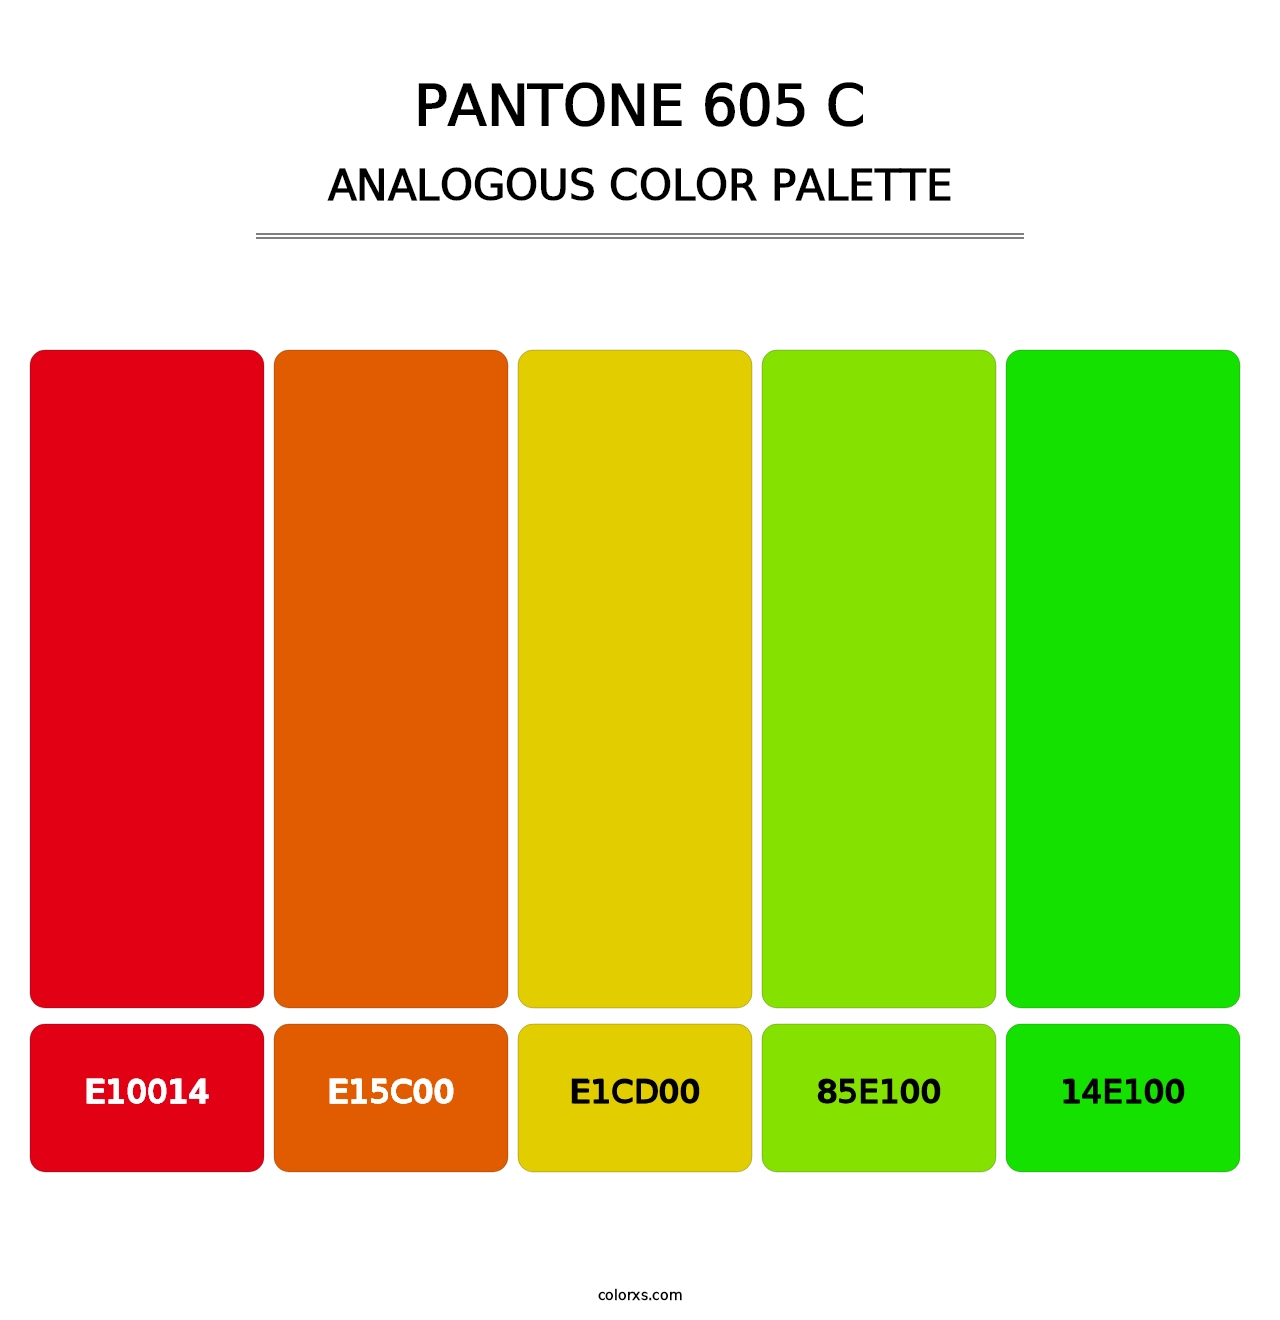 PANTONE 605 C - Analogous Color Palette